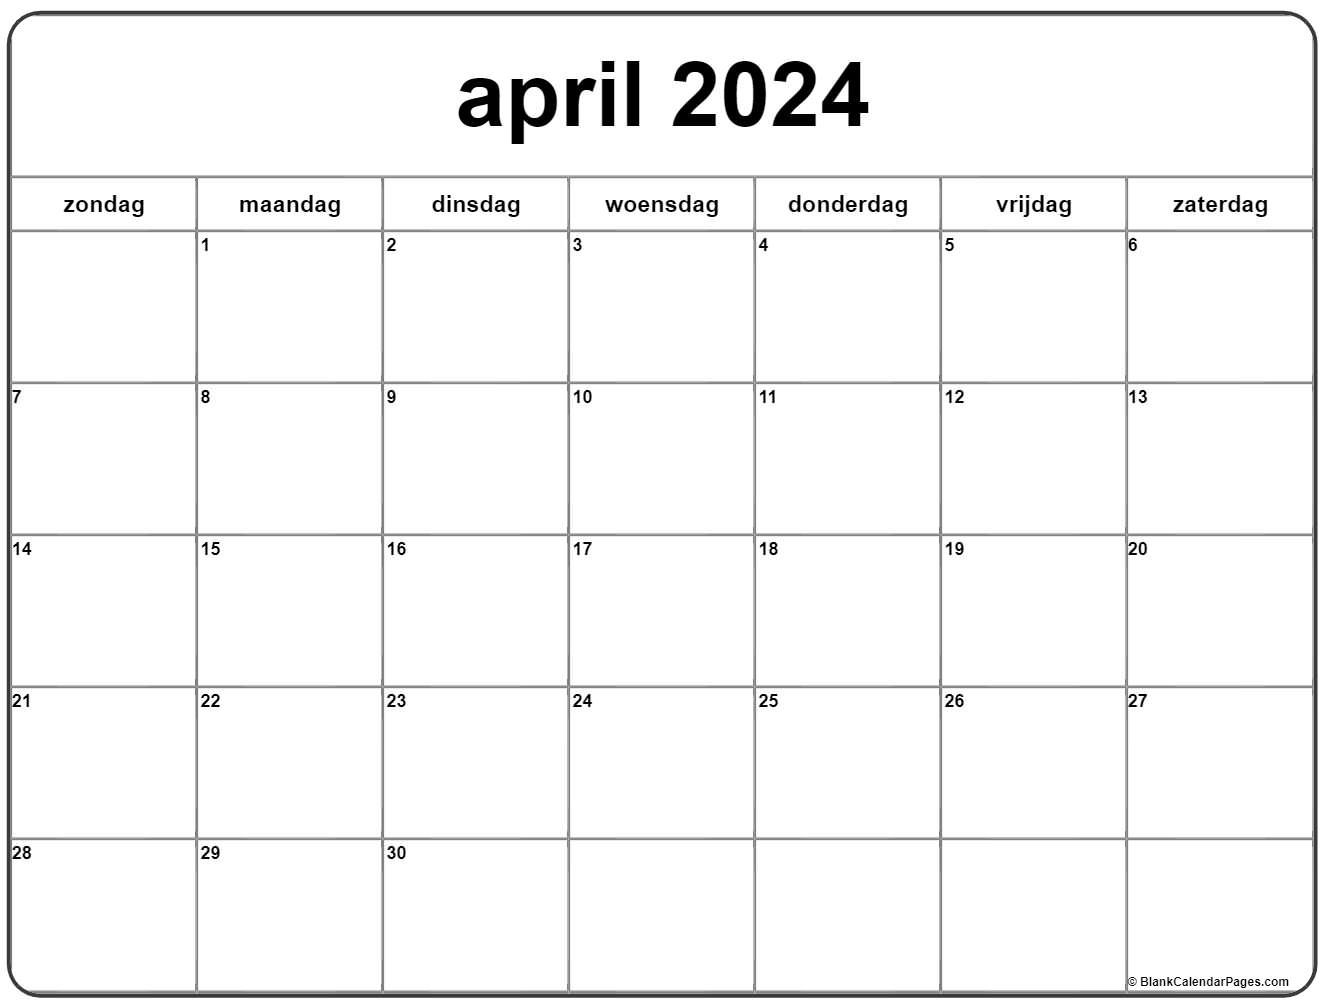 April 2024 Kalender Nederlandse | Kalender April intended for Calender 2024 April